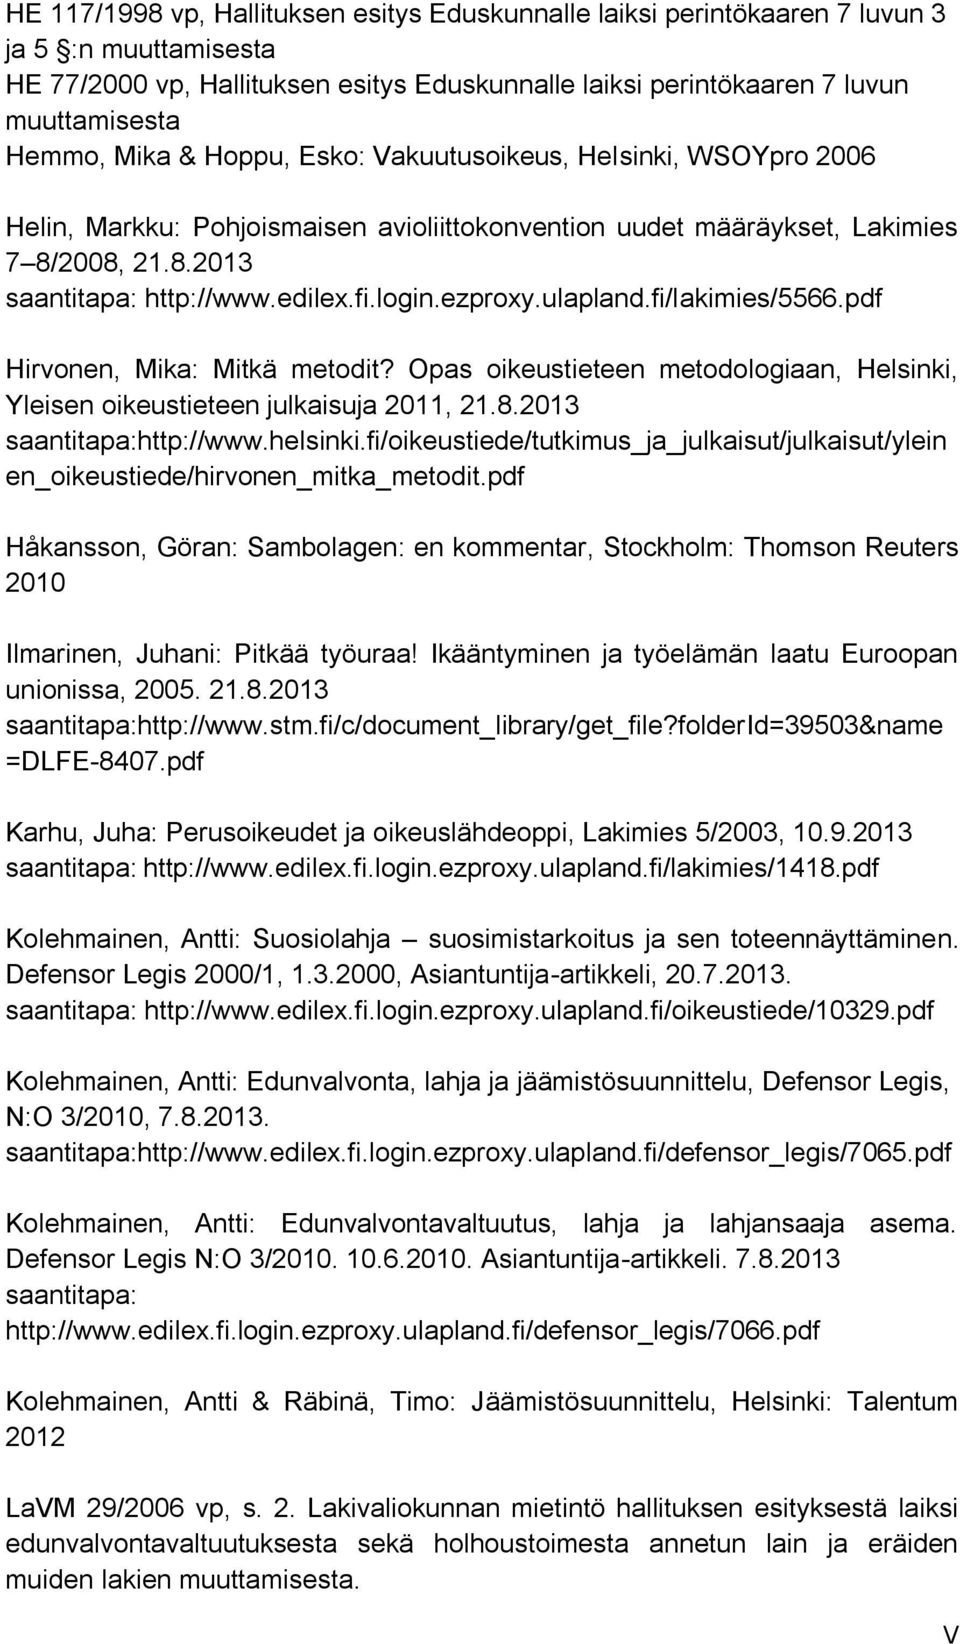 ezproxy.ulapland.fi/lakimies/5566.pdf Hirvonen, Mika: Mitkä metodit? Opas oikeustieteen metodologiaan, Helsinki, Yleisen oikeustieteen julkaisuja 2011, 21.8.2013 saantitapa:http://www.helsinki.